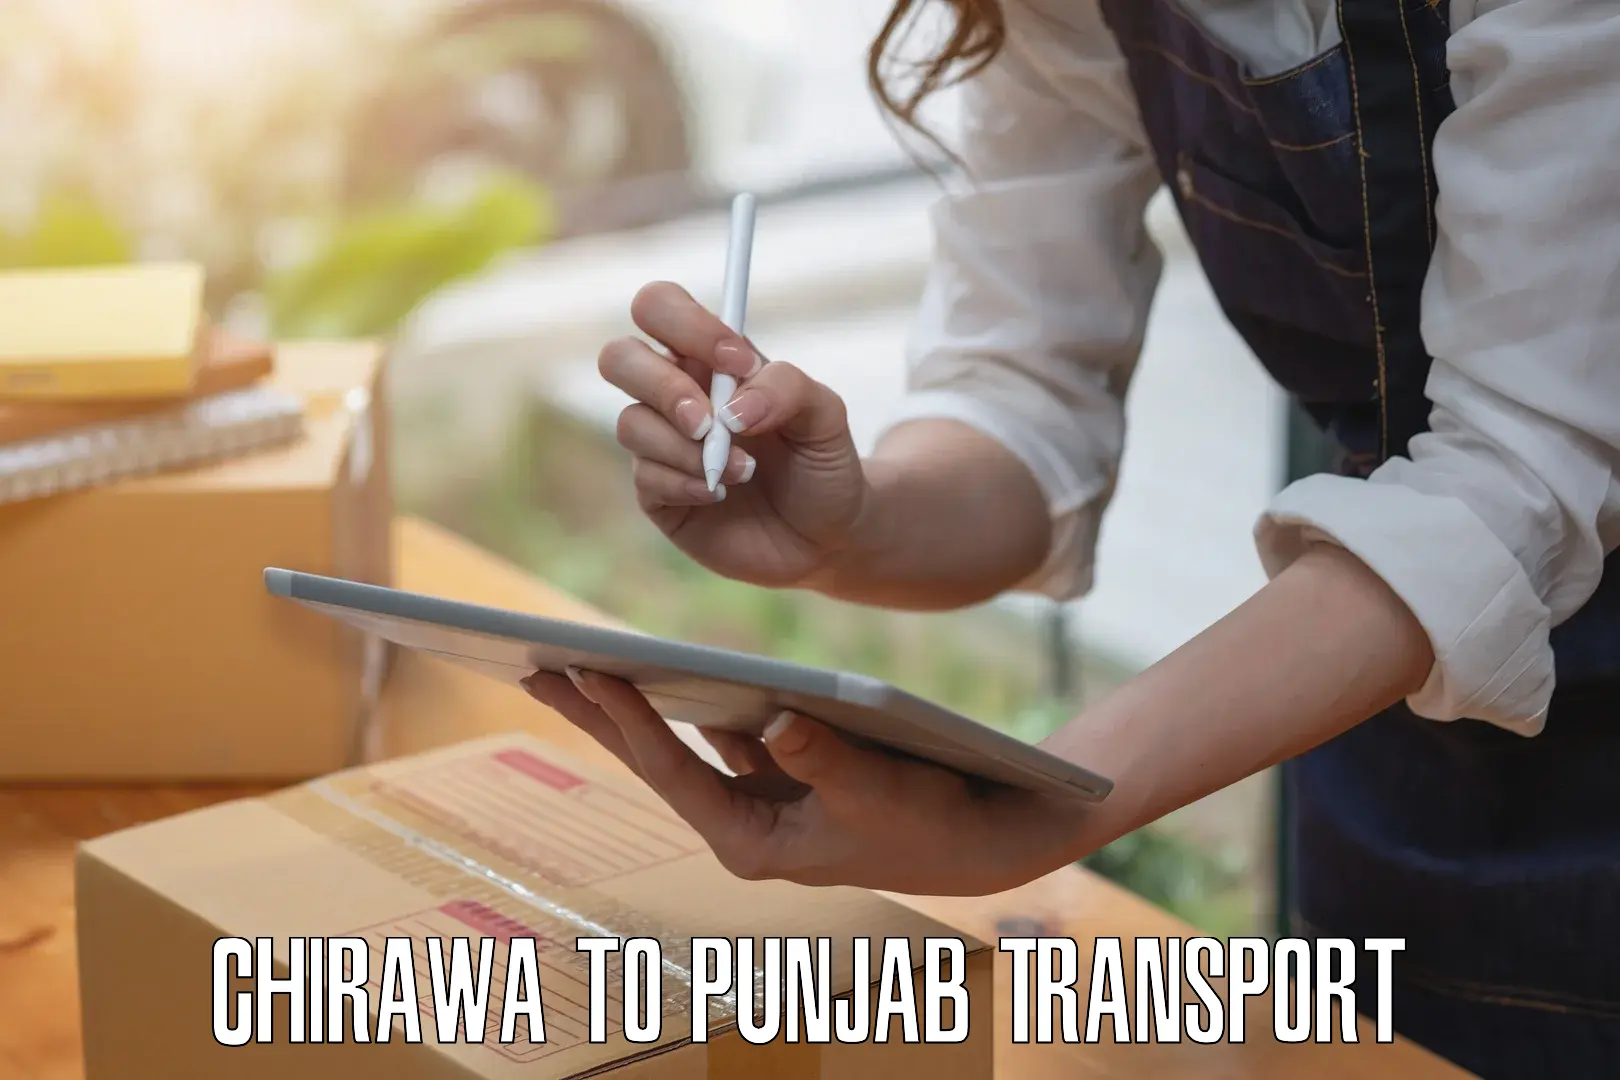 All India transport service Chirawa to Punjab